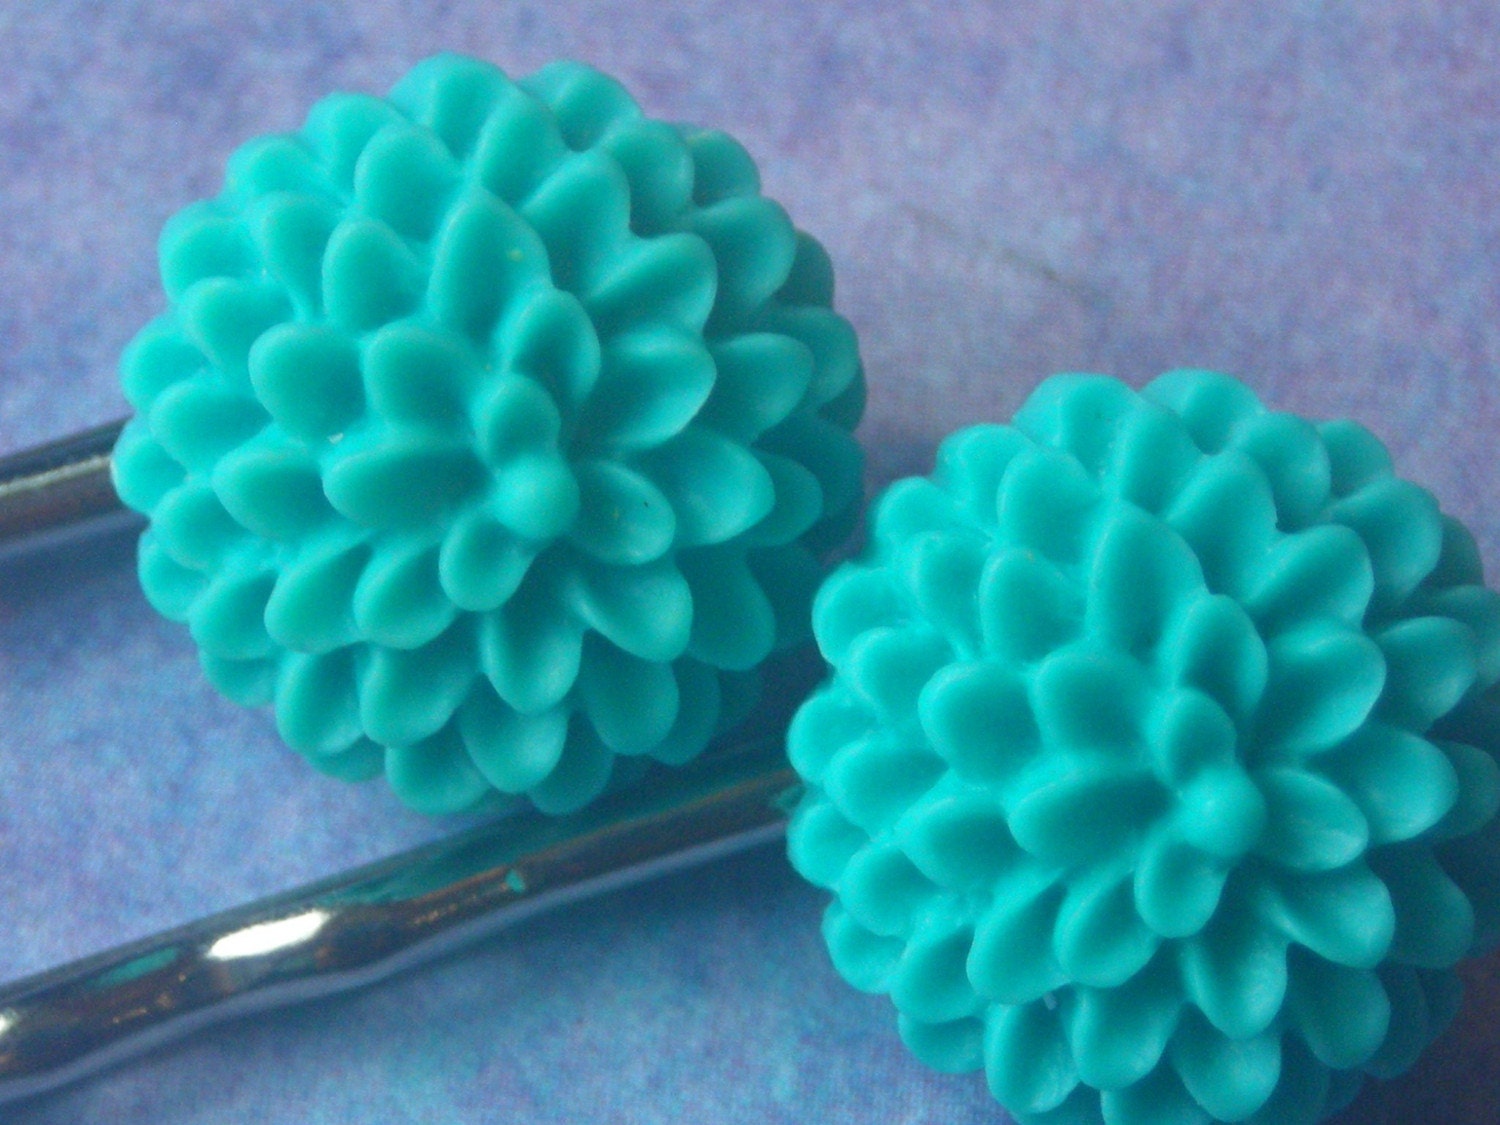 Vintage inspired hair pins